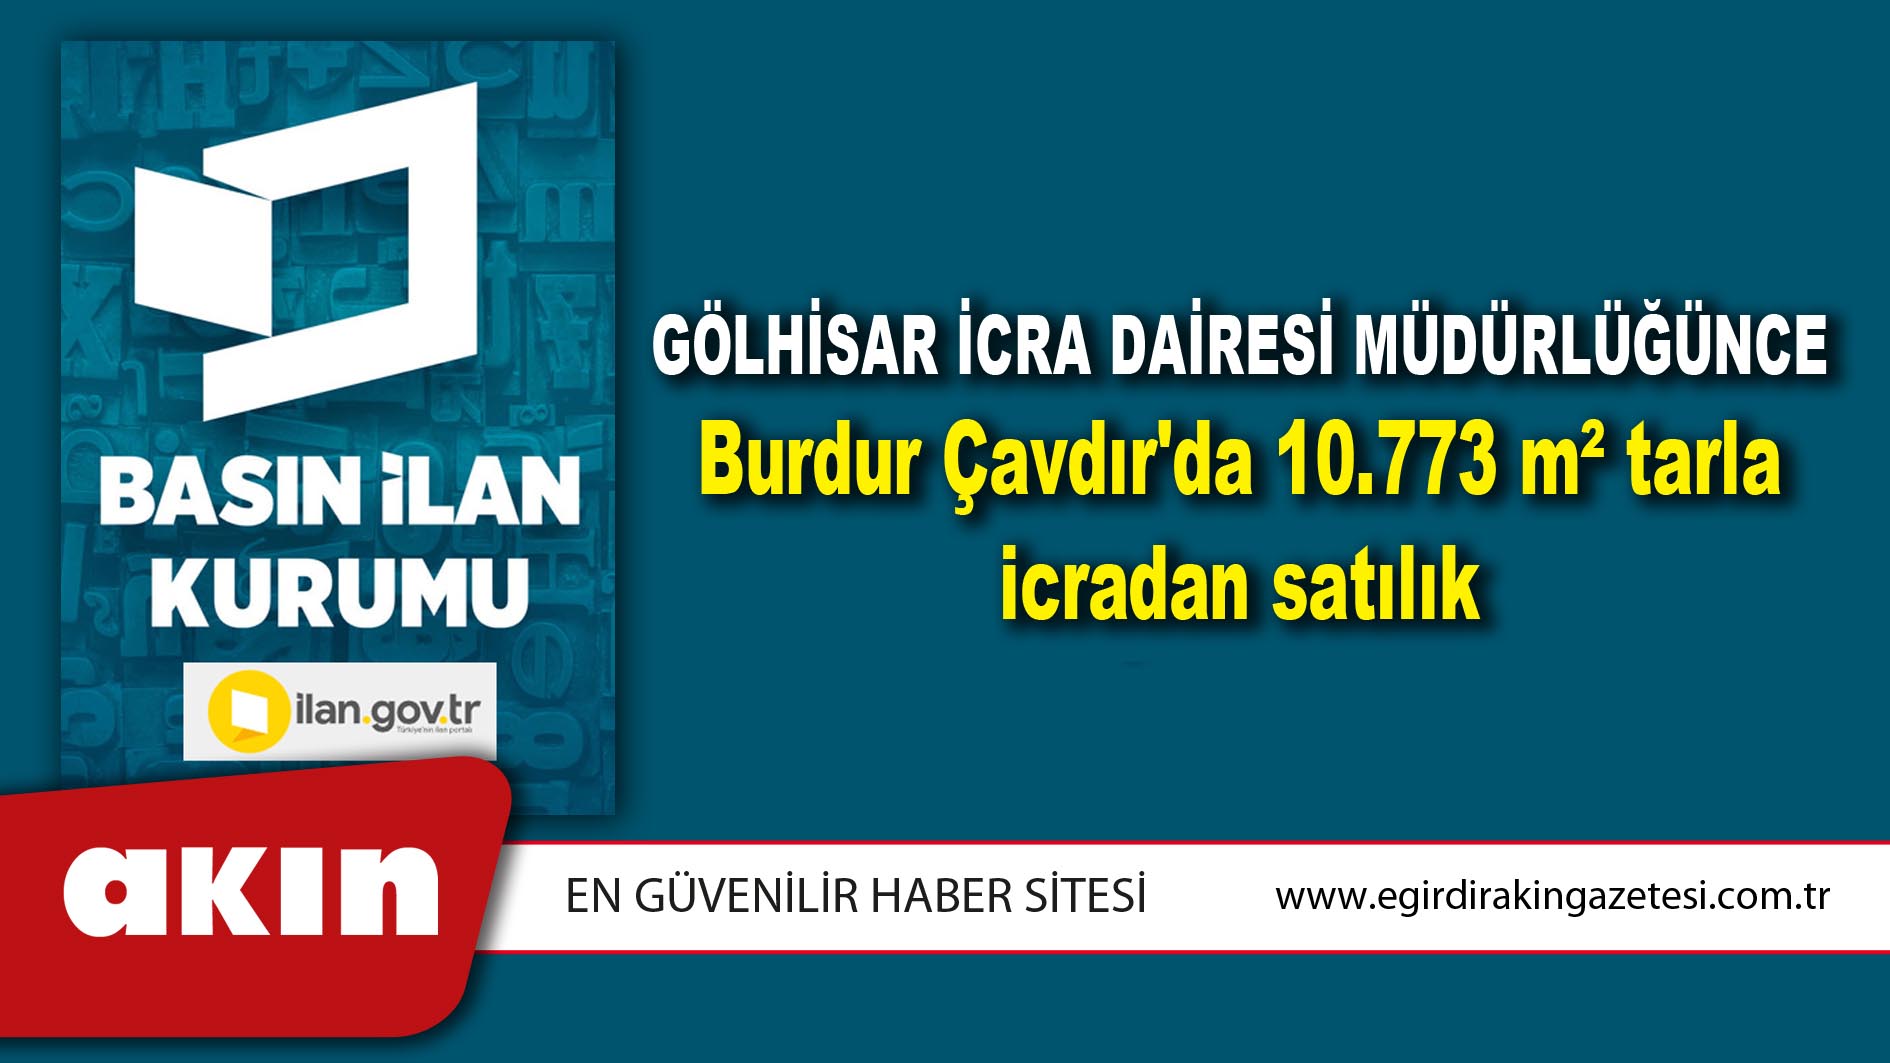 Gölhisar İcra Dairesi Müdürlüğünce Burdur Çavdır'da 10.773 m² tarla icradan satılık